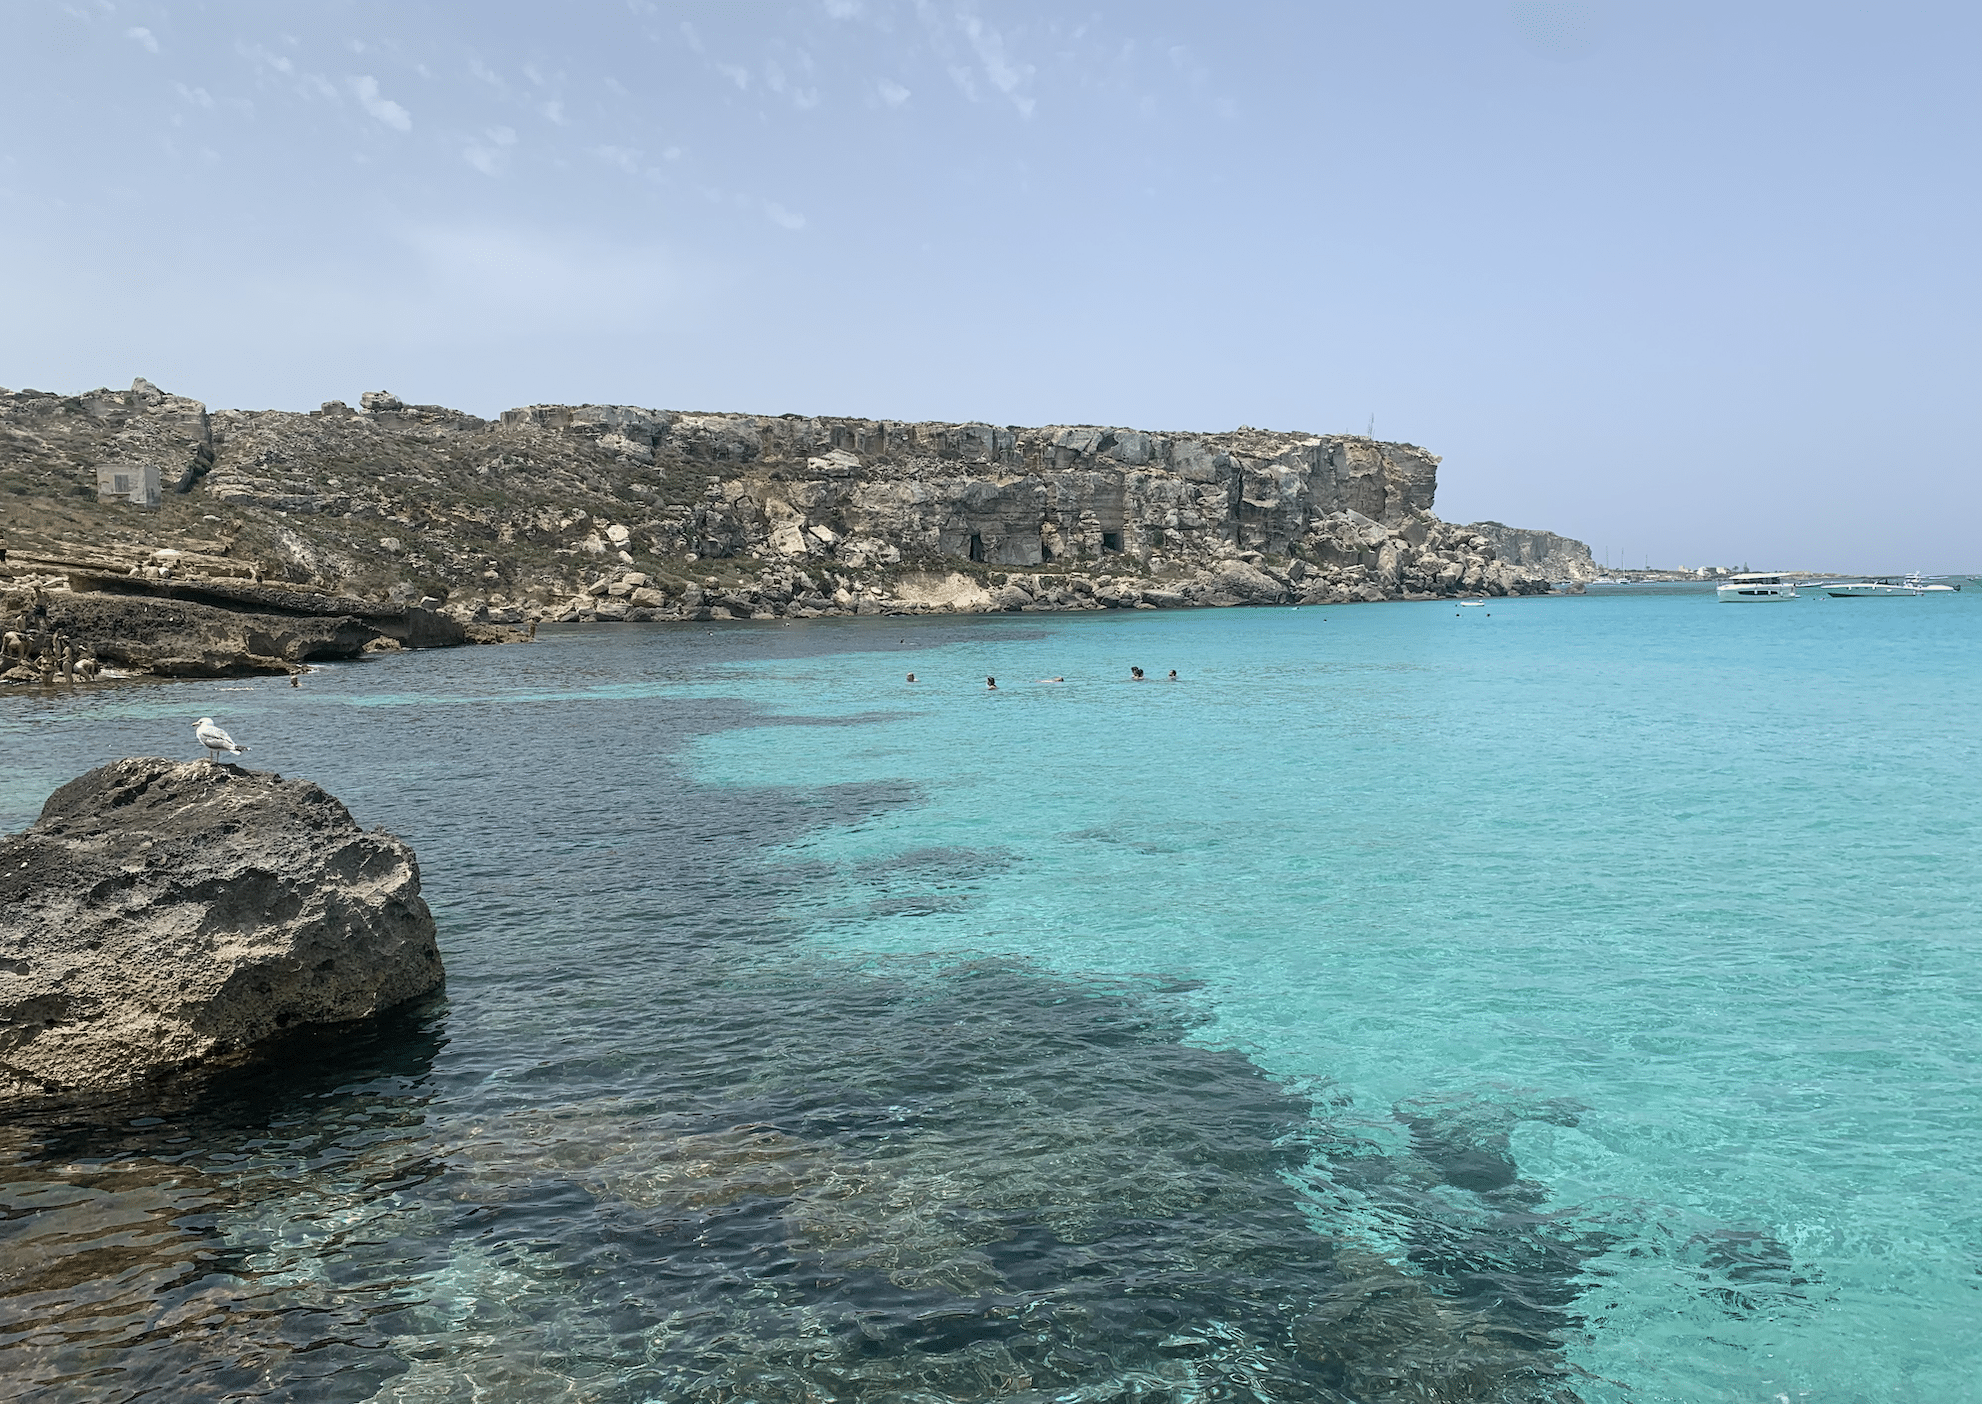 plus belles plages de sicile : les plages de l'ile de favignana